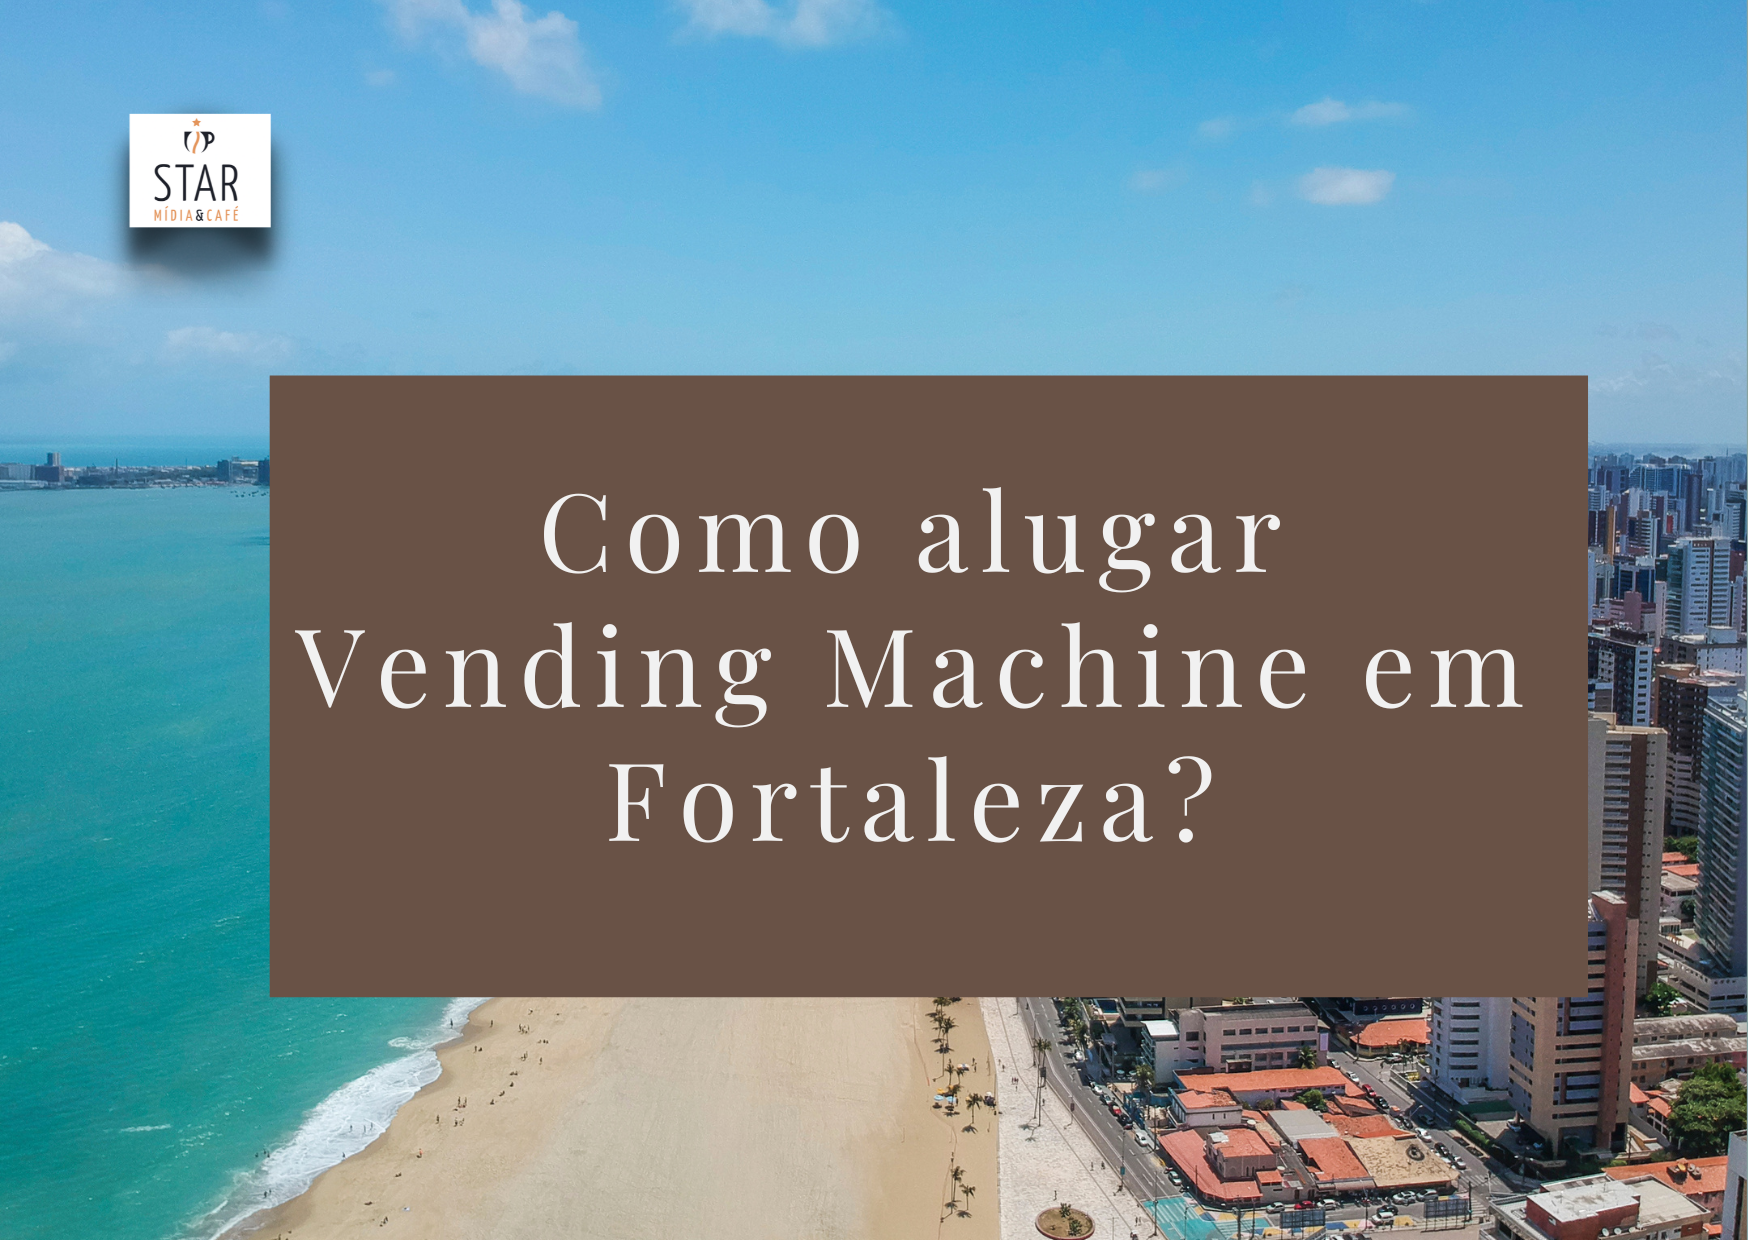 COMO ALUGAR VENDING MACHINE EM FORTALEZA?